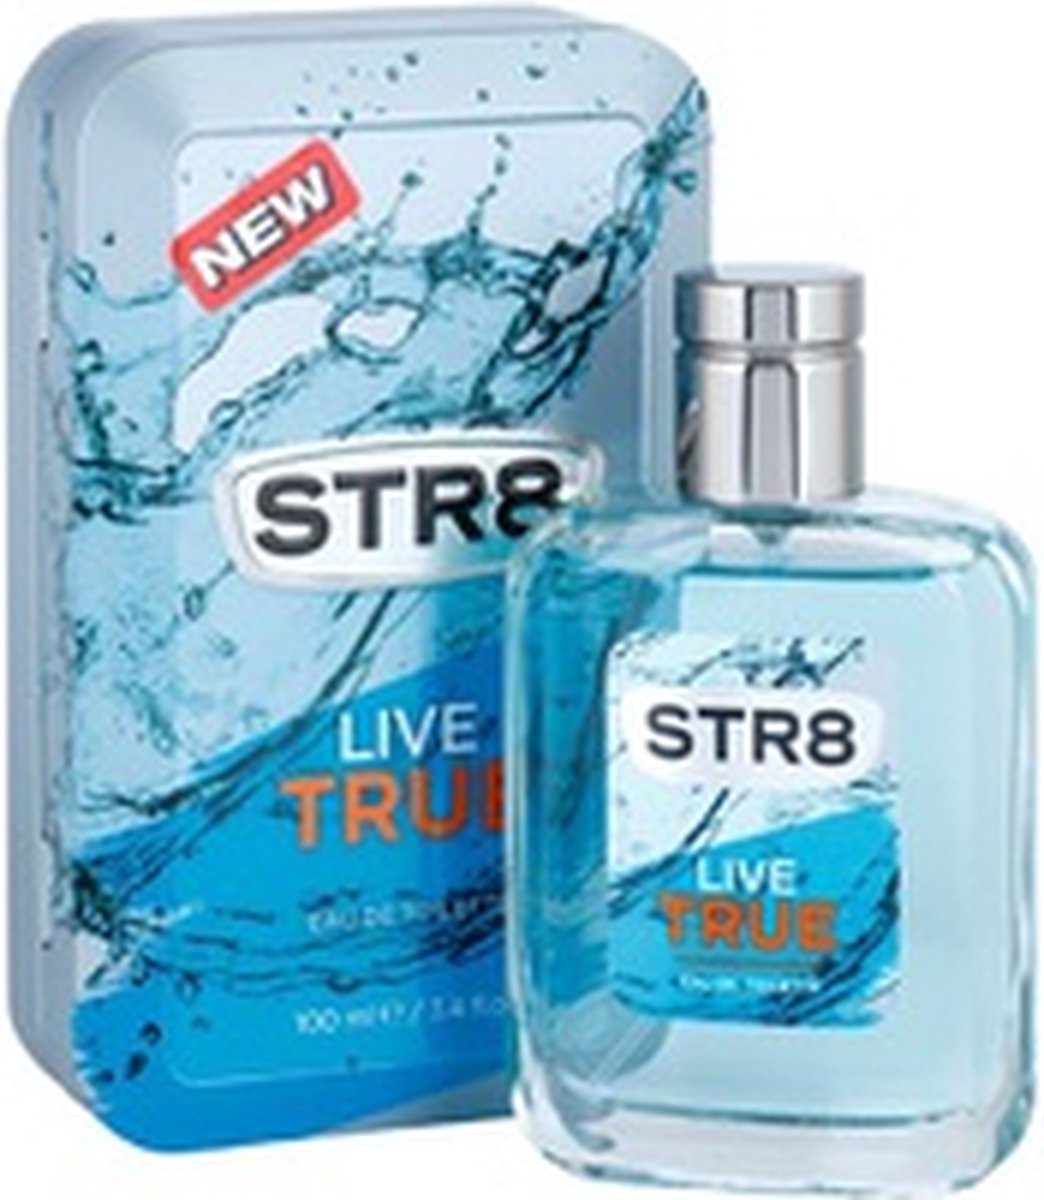 Str8 Live True - Eau De Toilette Mannen - Mannen Parfum - 50 ml